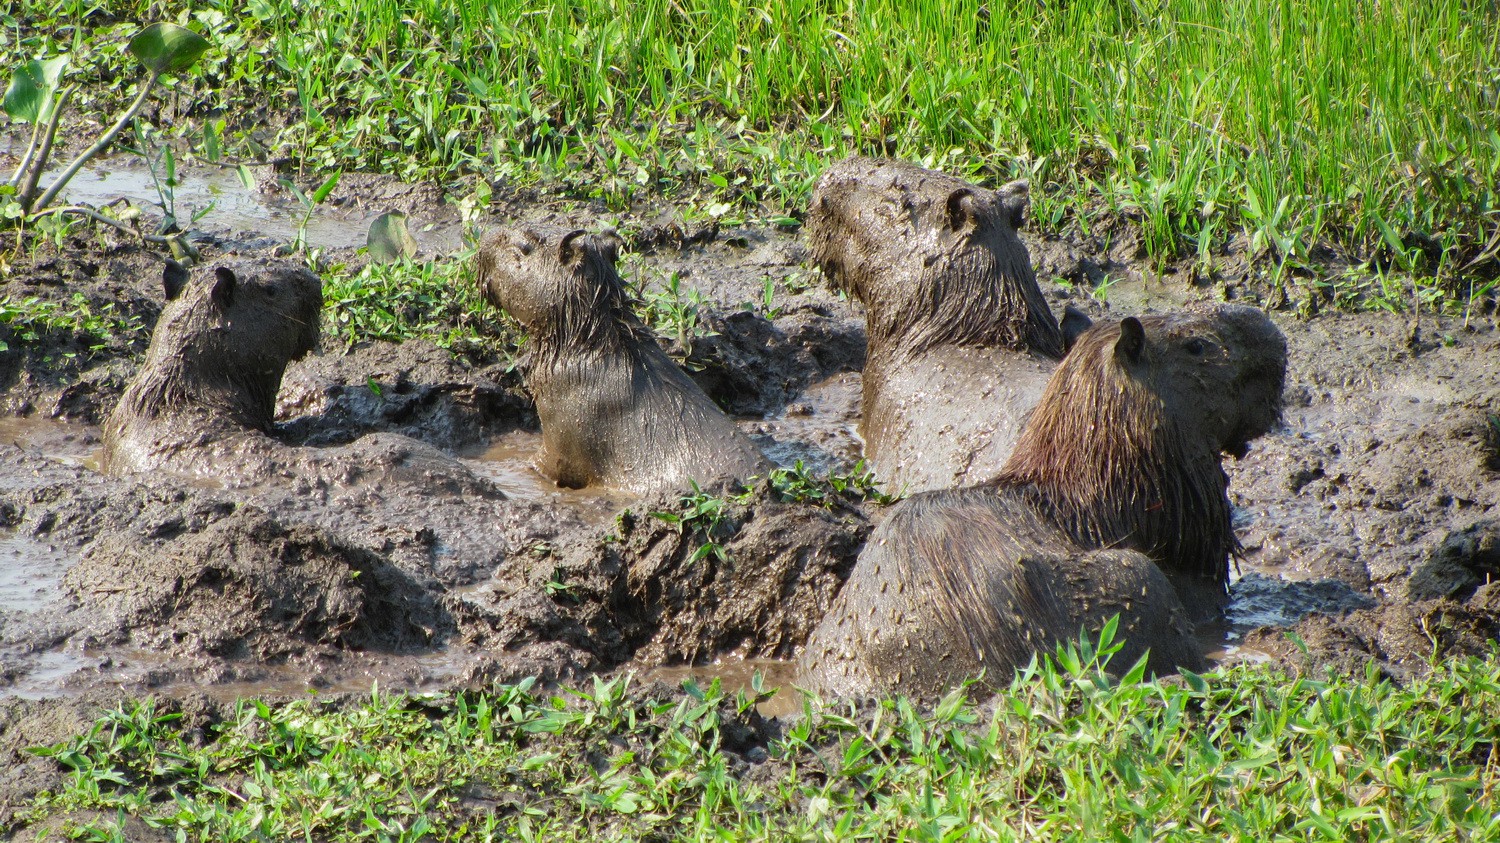 That's cool - Capybaras enjoying the mud